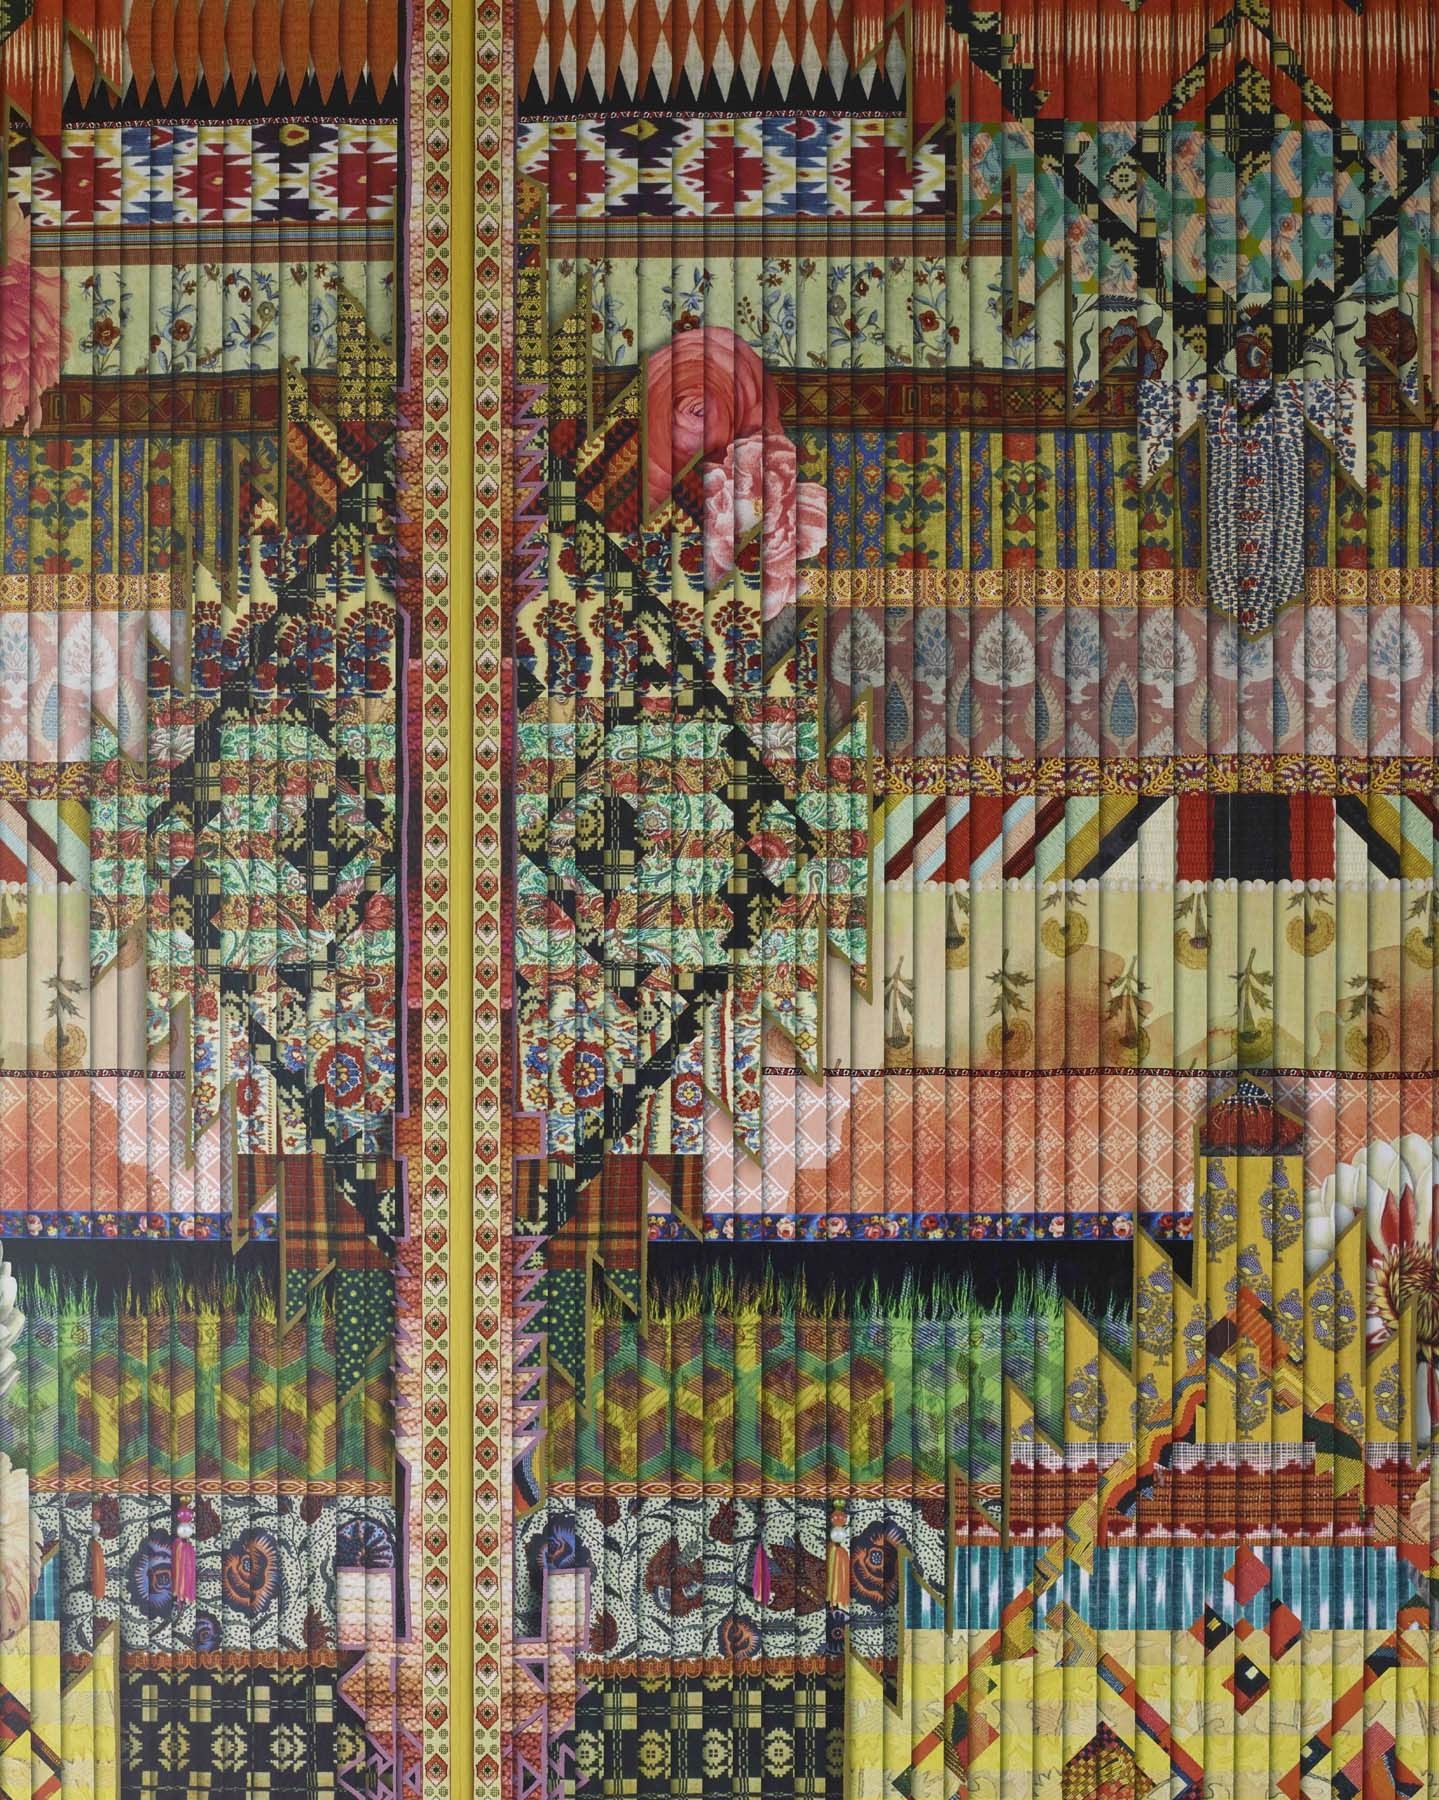 Fétiche Arlequin Wallpaper-3 - Lacroix Christian , HD Wallpaper & Backgrounds